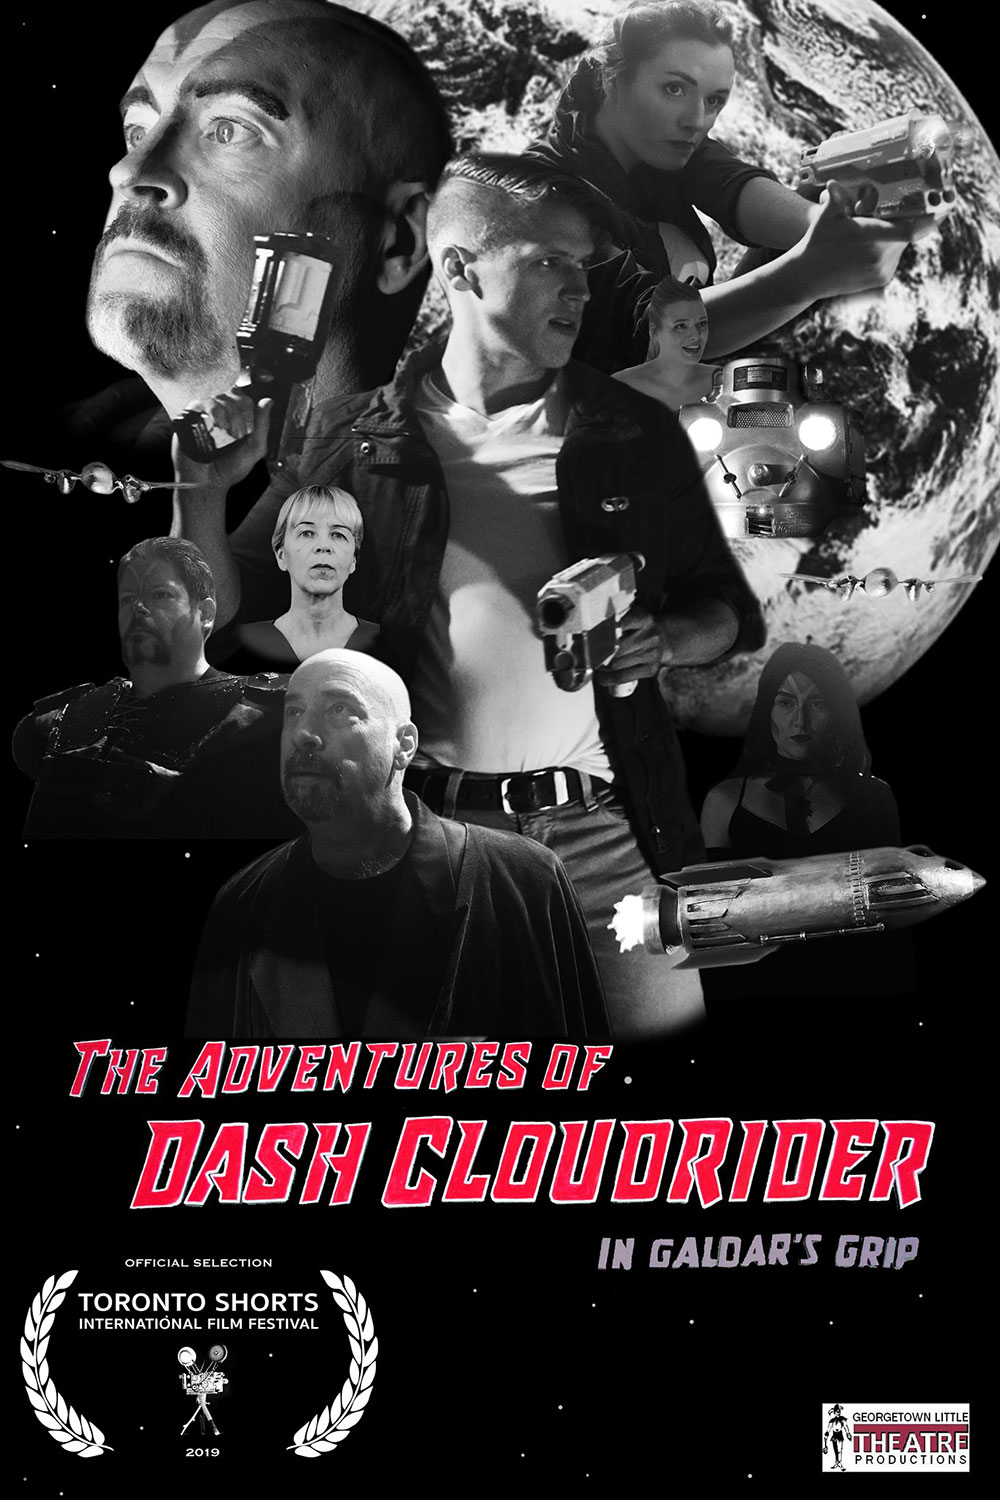 Dash Cloudrider